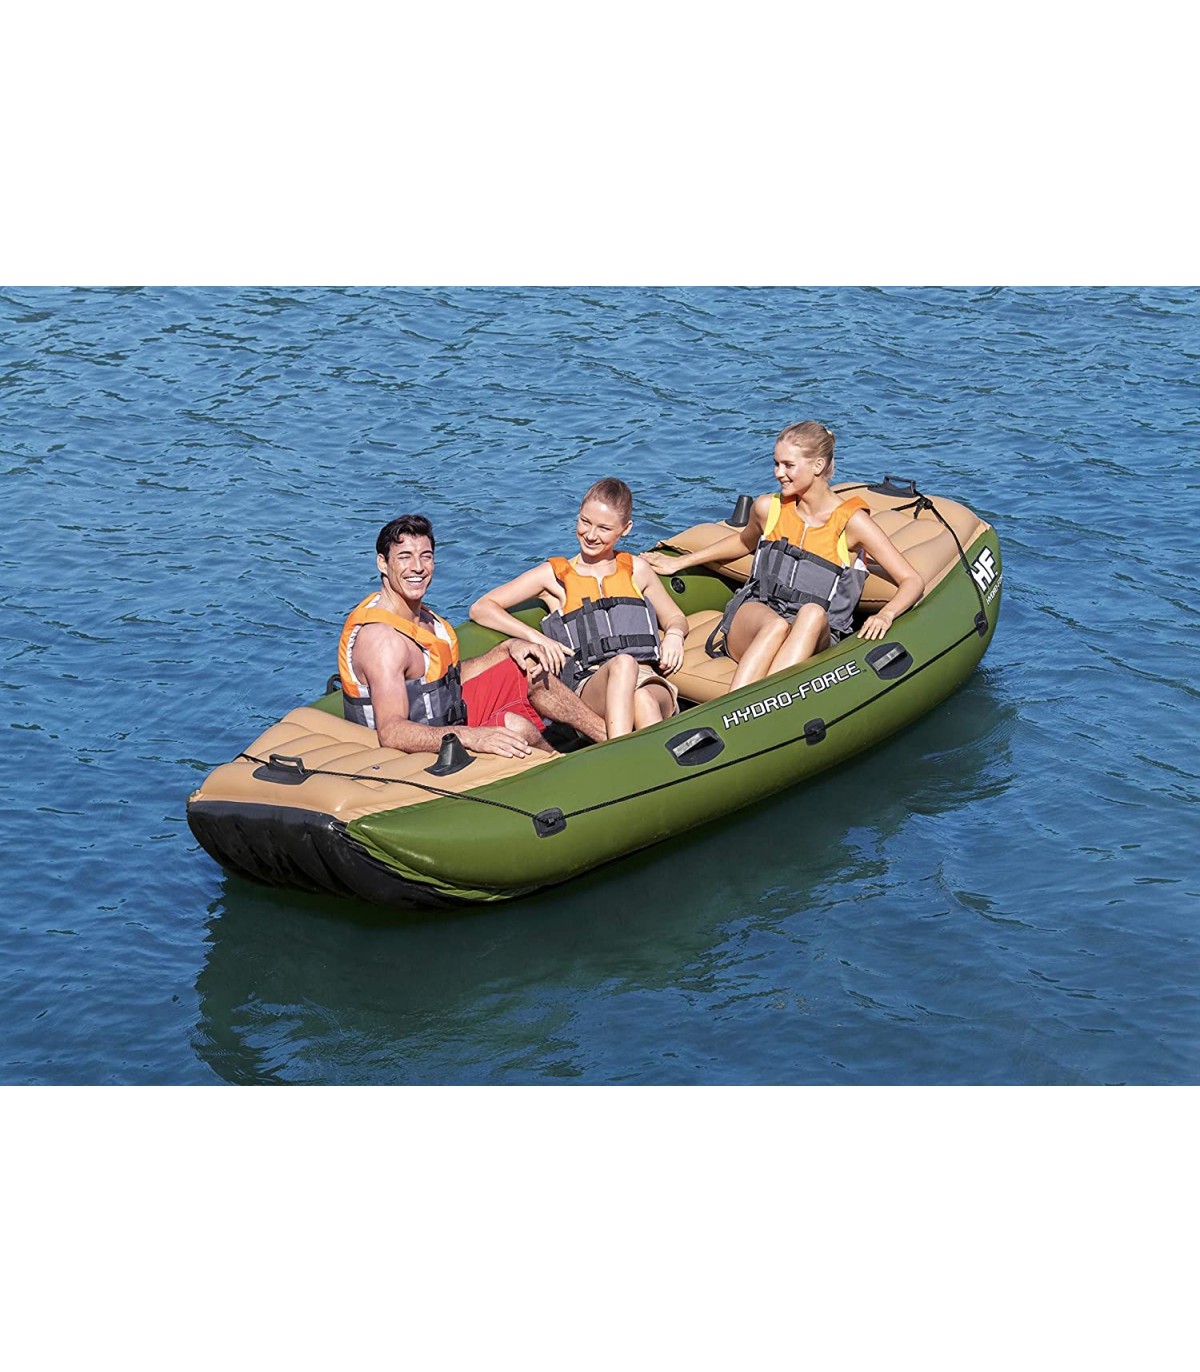 OFERTA - Barca Hinchable Nuba , ideal para hacer deporte en exterior